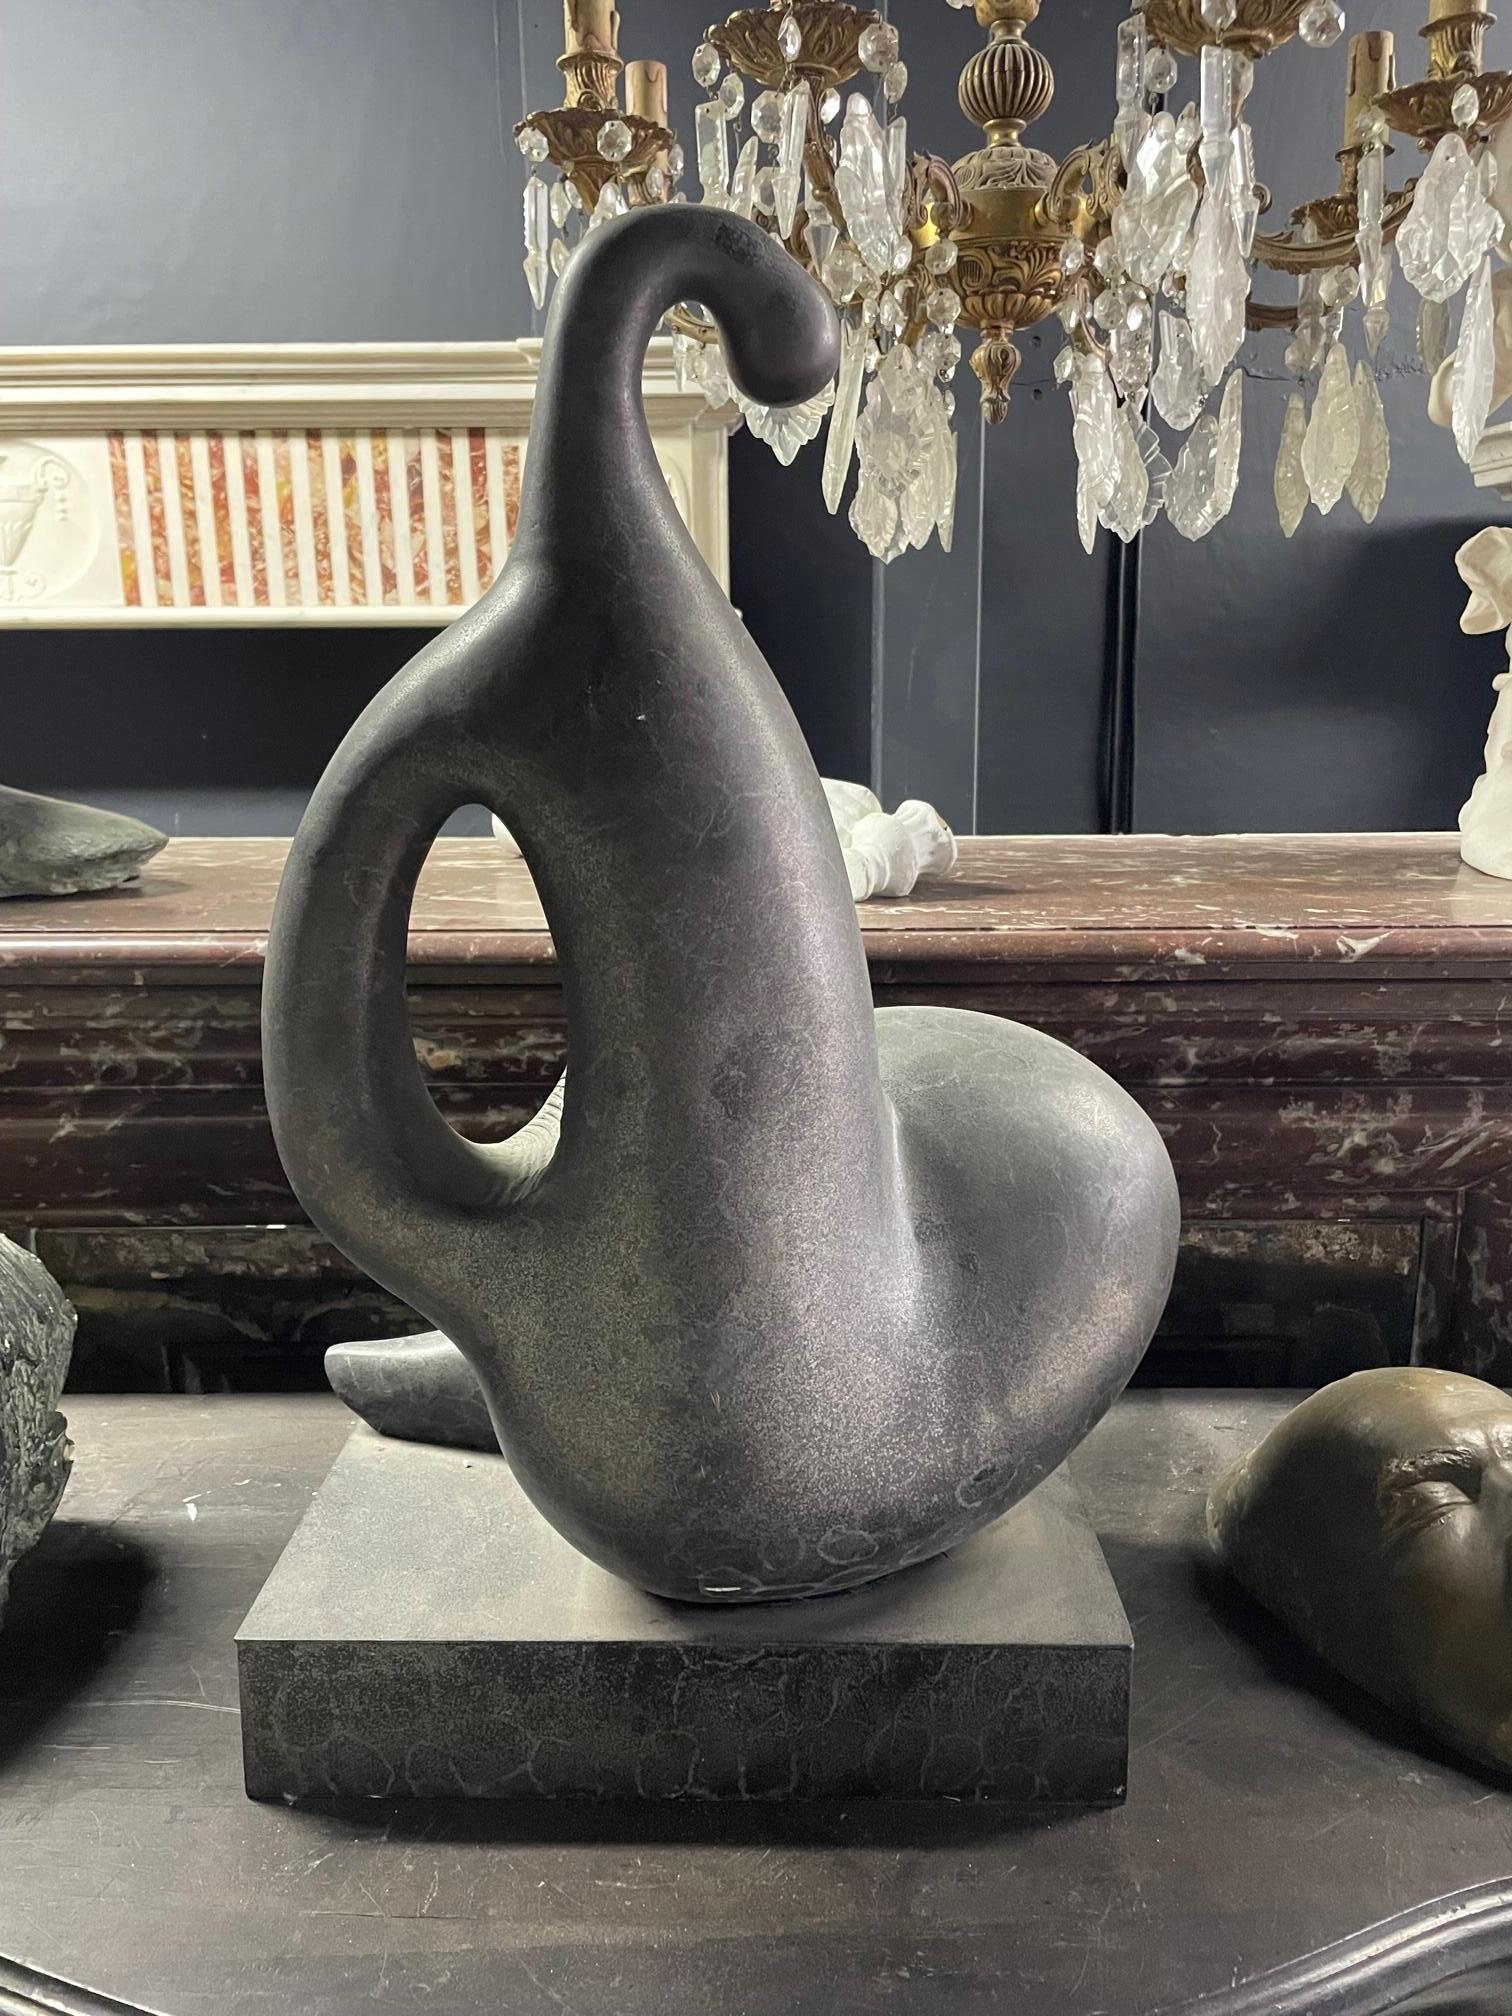 Une fantastique pièce d'art abstrait sous la forme d'une sculpture en bronze.

Avec un moulage net sous la forme d'un motif de coquillage et d'une figurine et avec une grande patine Verdi gris.